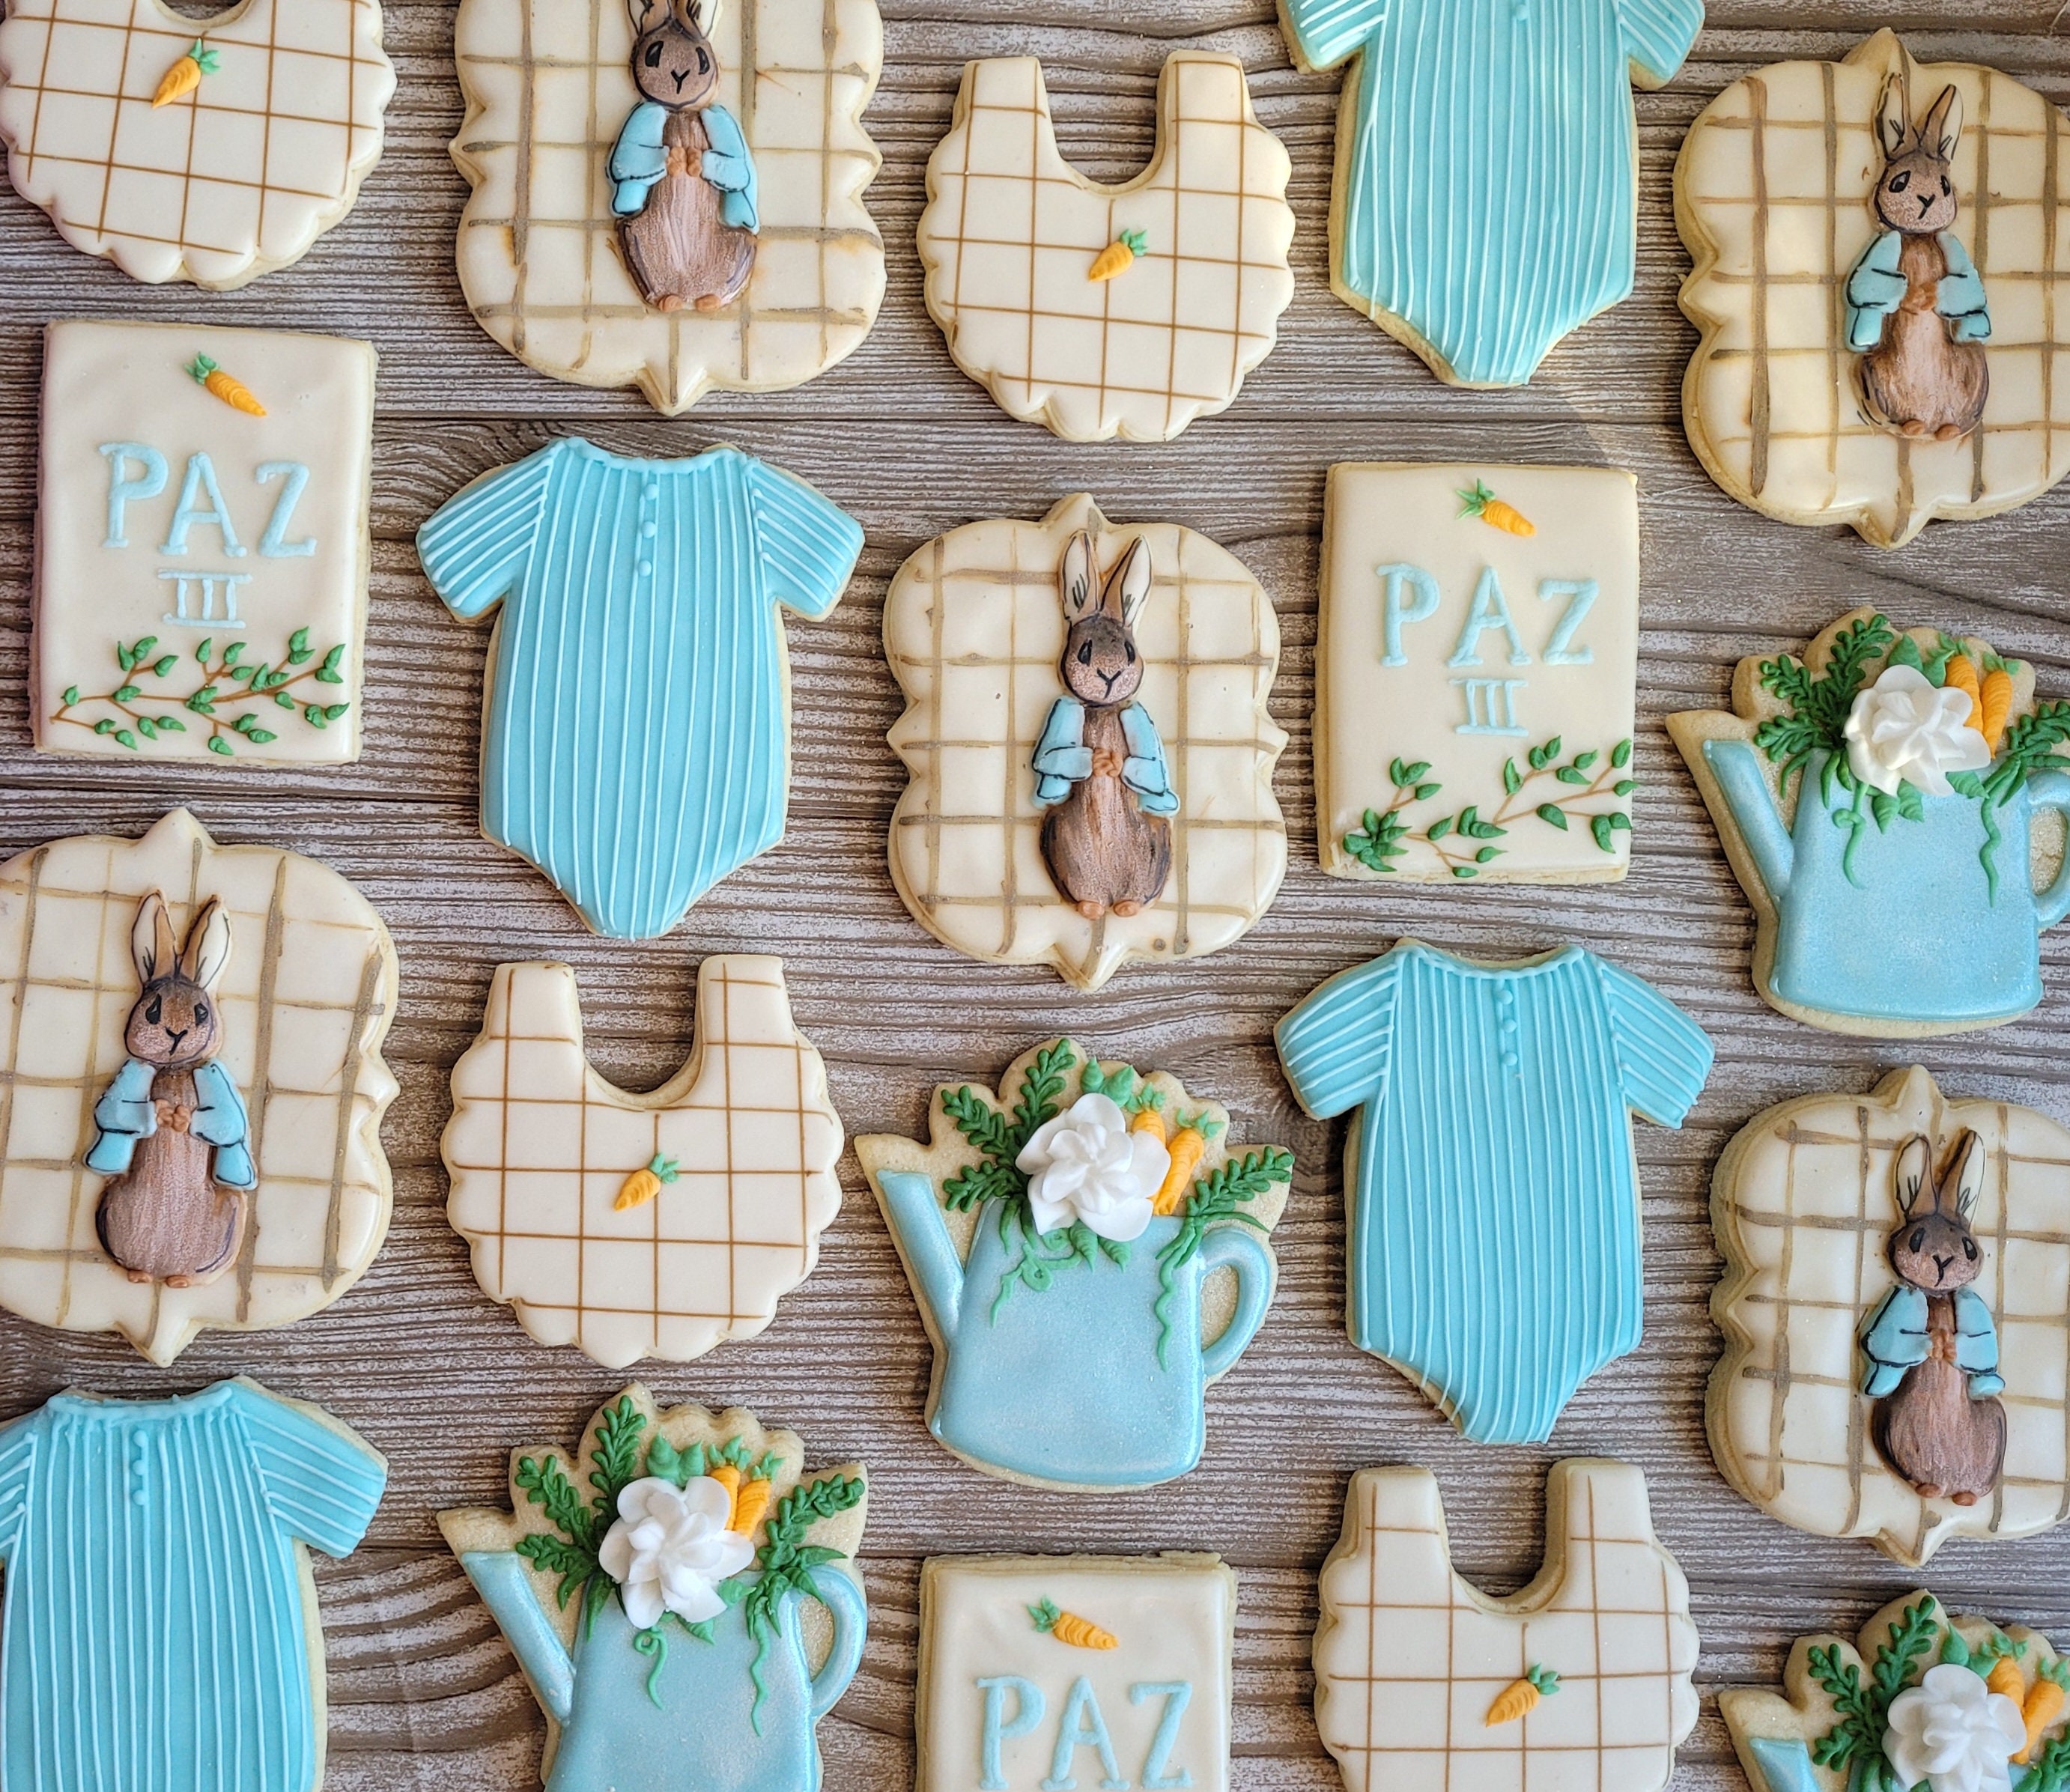 Peter Rabbit Baby Shower Cookies! : r/cookiedecorating